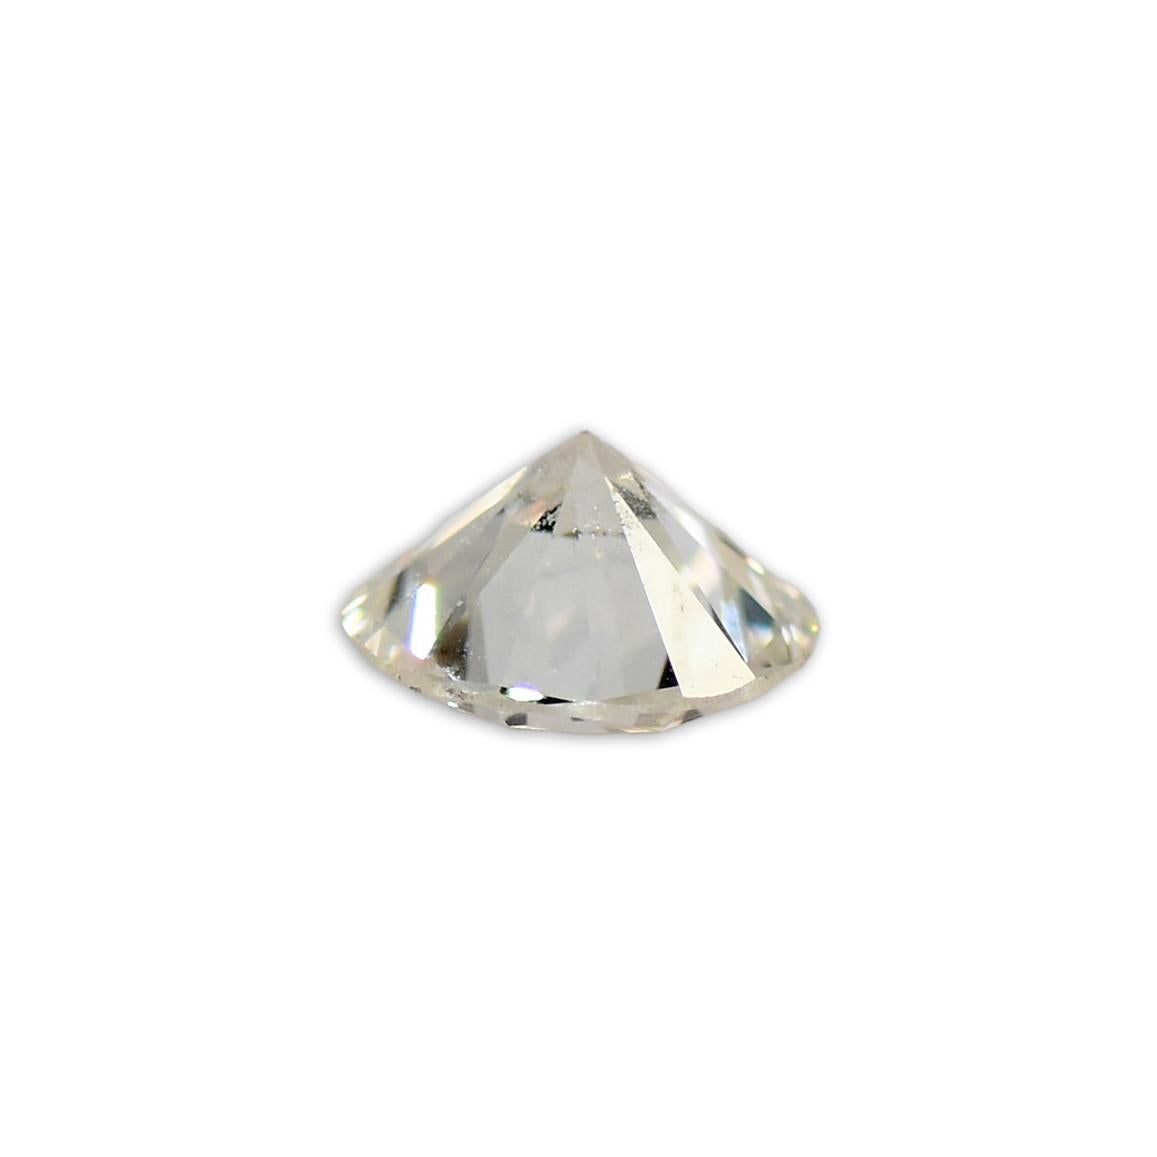 Diamant rond brillant en vrac, 0,68 carats.
GIA : couleur H, pureté VS1, bonne symétrie.
Le numéro du rapport d'évaluation de la GIA est 2221722902.
Diamant très brillant.
Il est accompagné d'un certificat de classement complet.